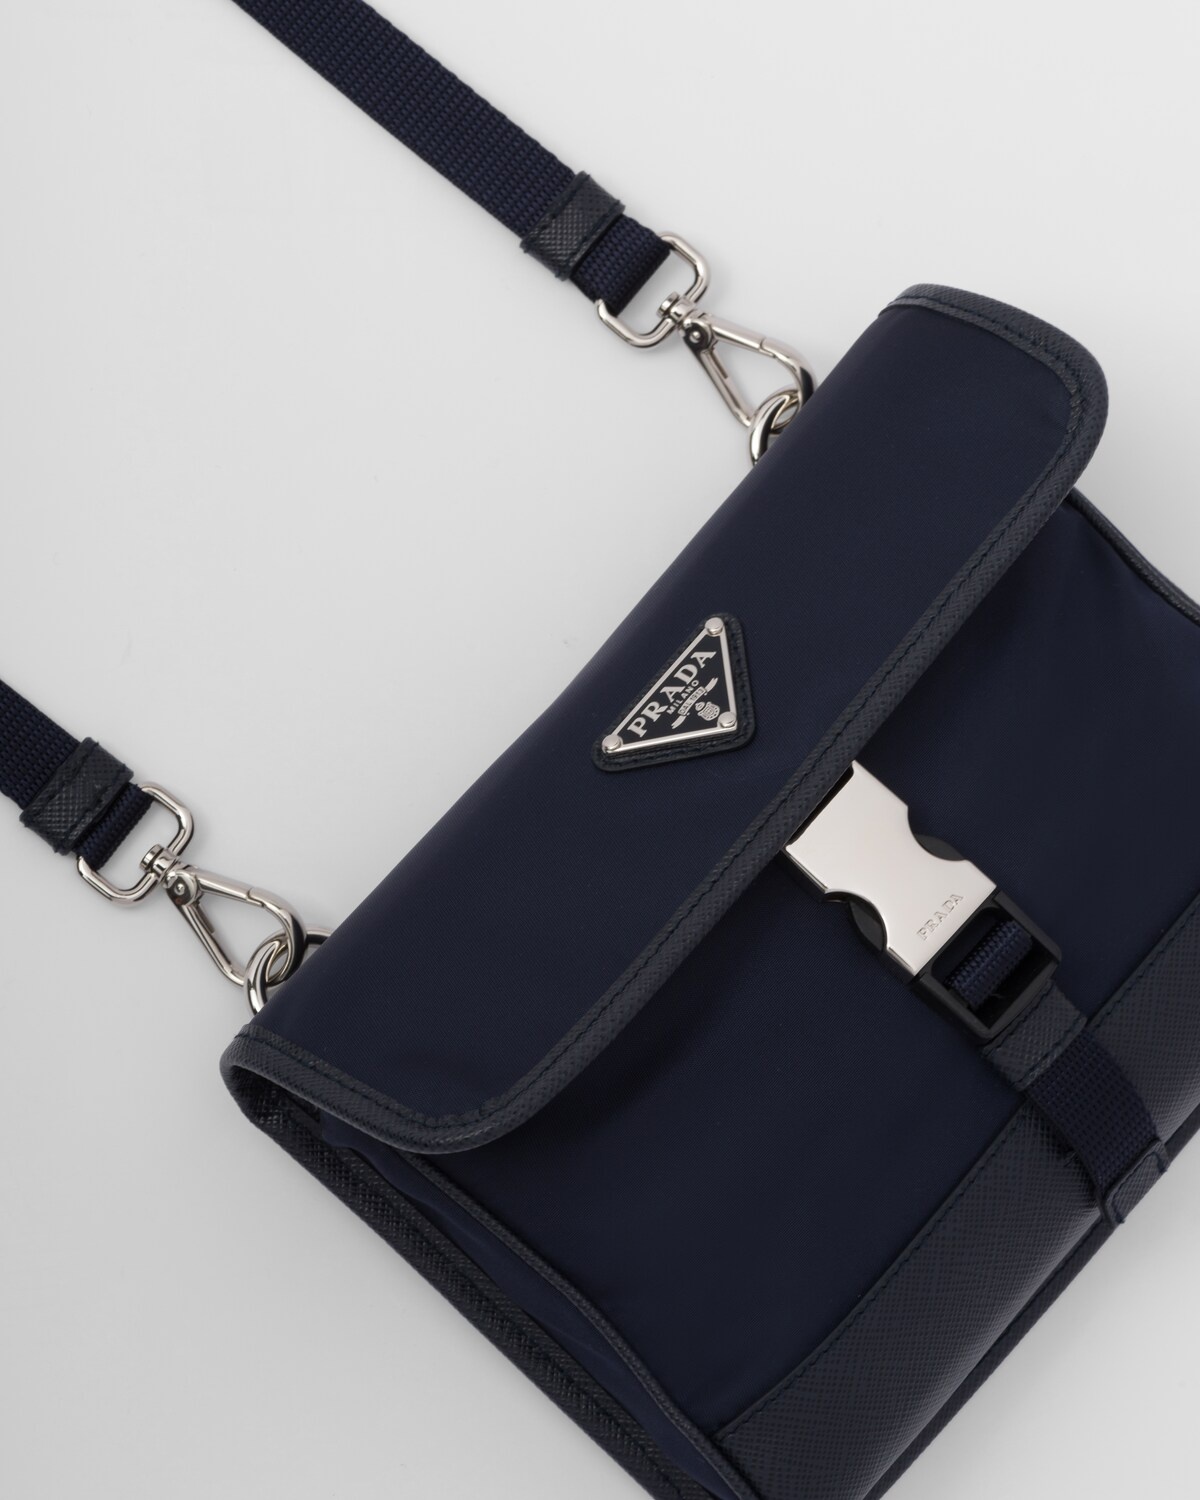 Re-Nylon and Saffiano leather smartphone case - 6